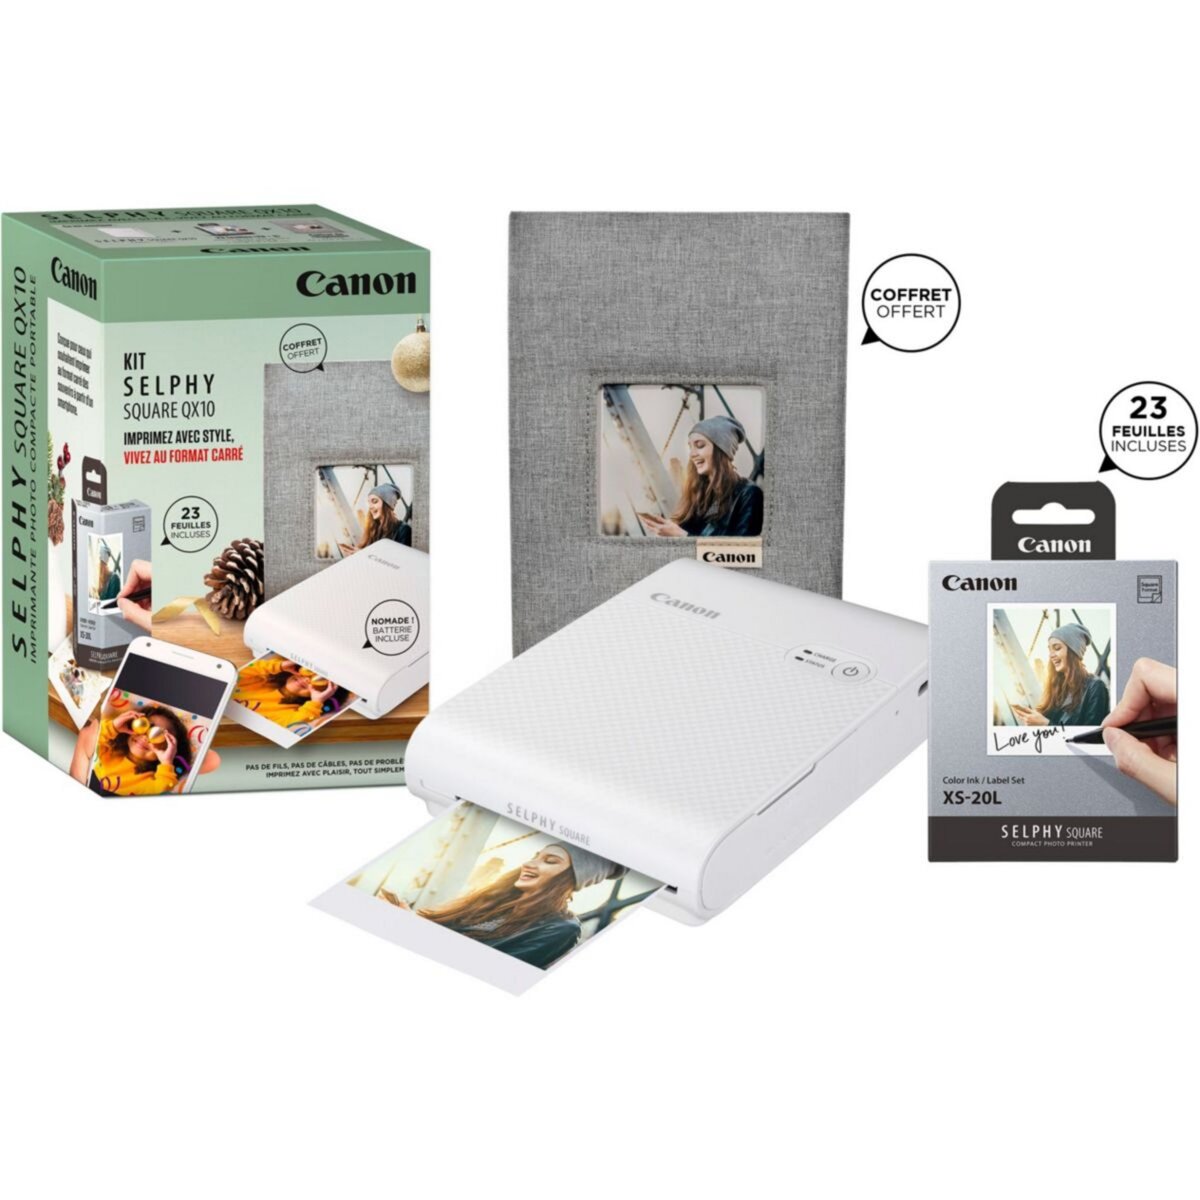 Canon Imprimante photo portable Kit QX10 + 20 feuilles + Coffret